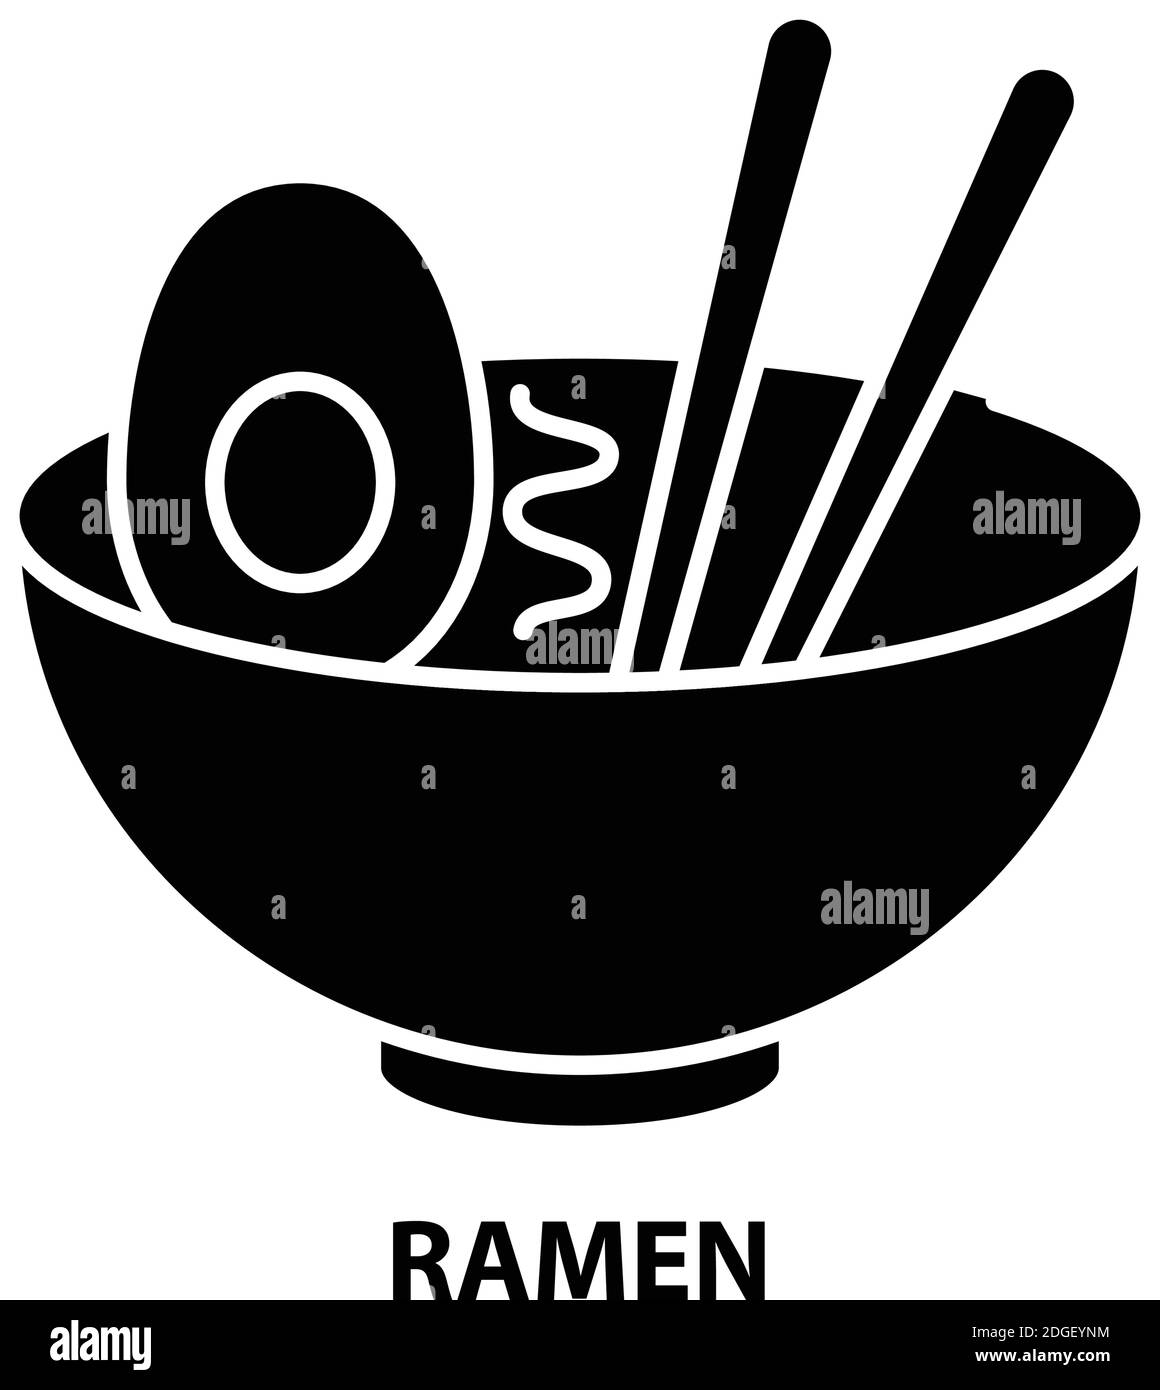 icona simbolo ramen, segno vettoriale nero con tratti modificabili, illustrazione concettuale Illustrazione Vettoriale